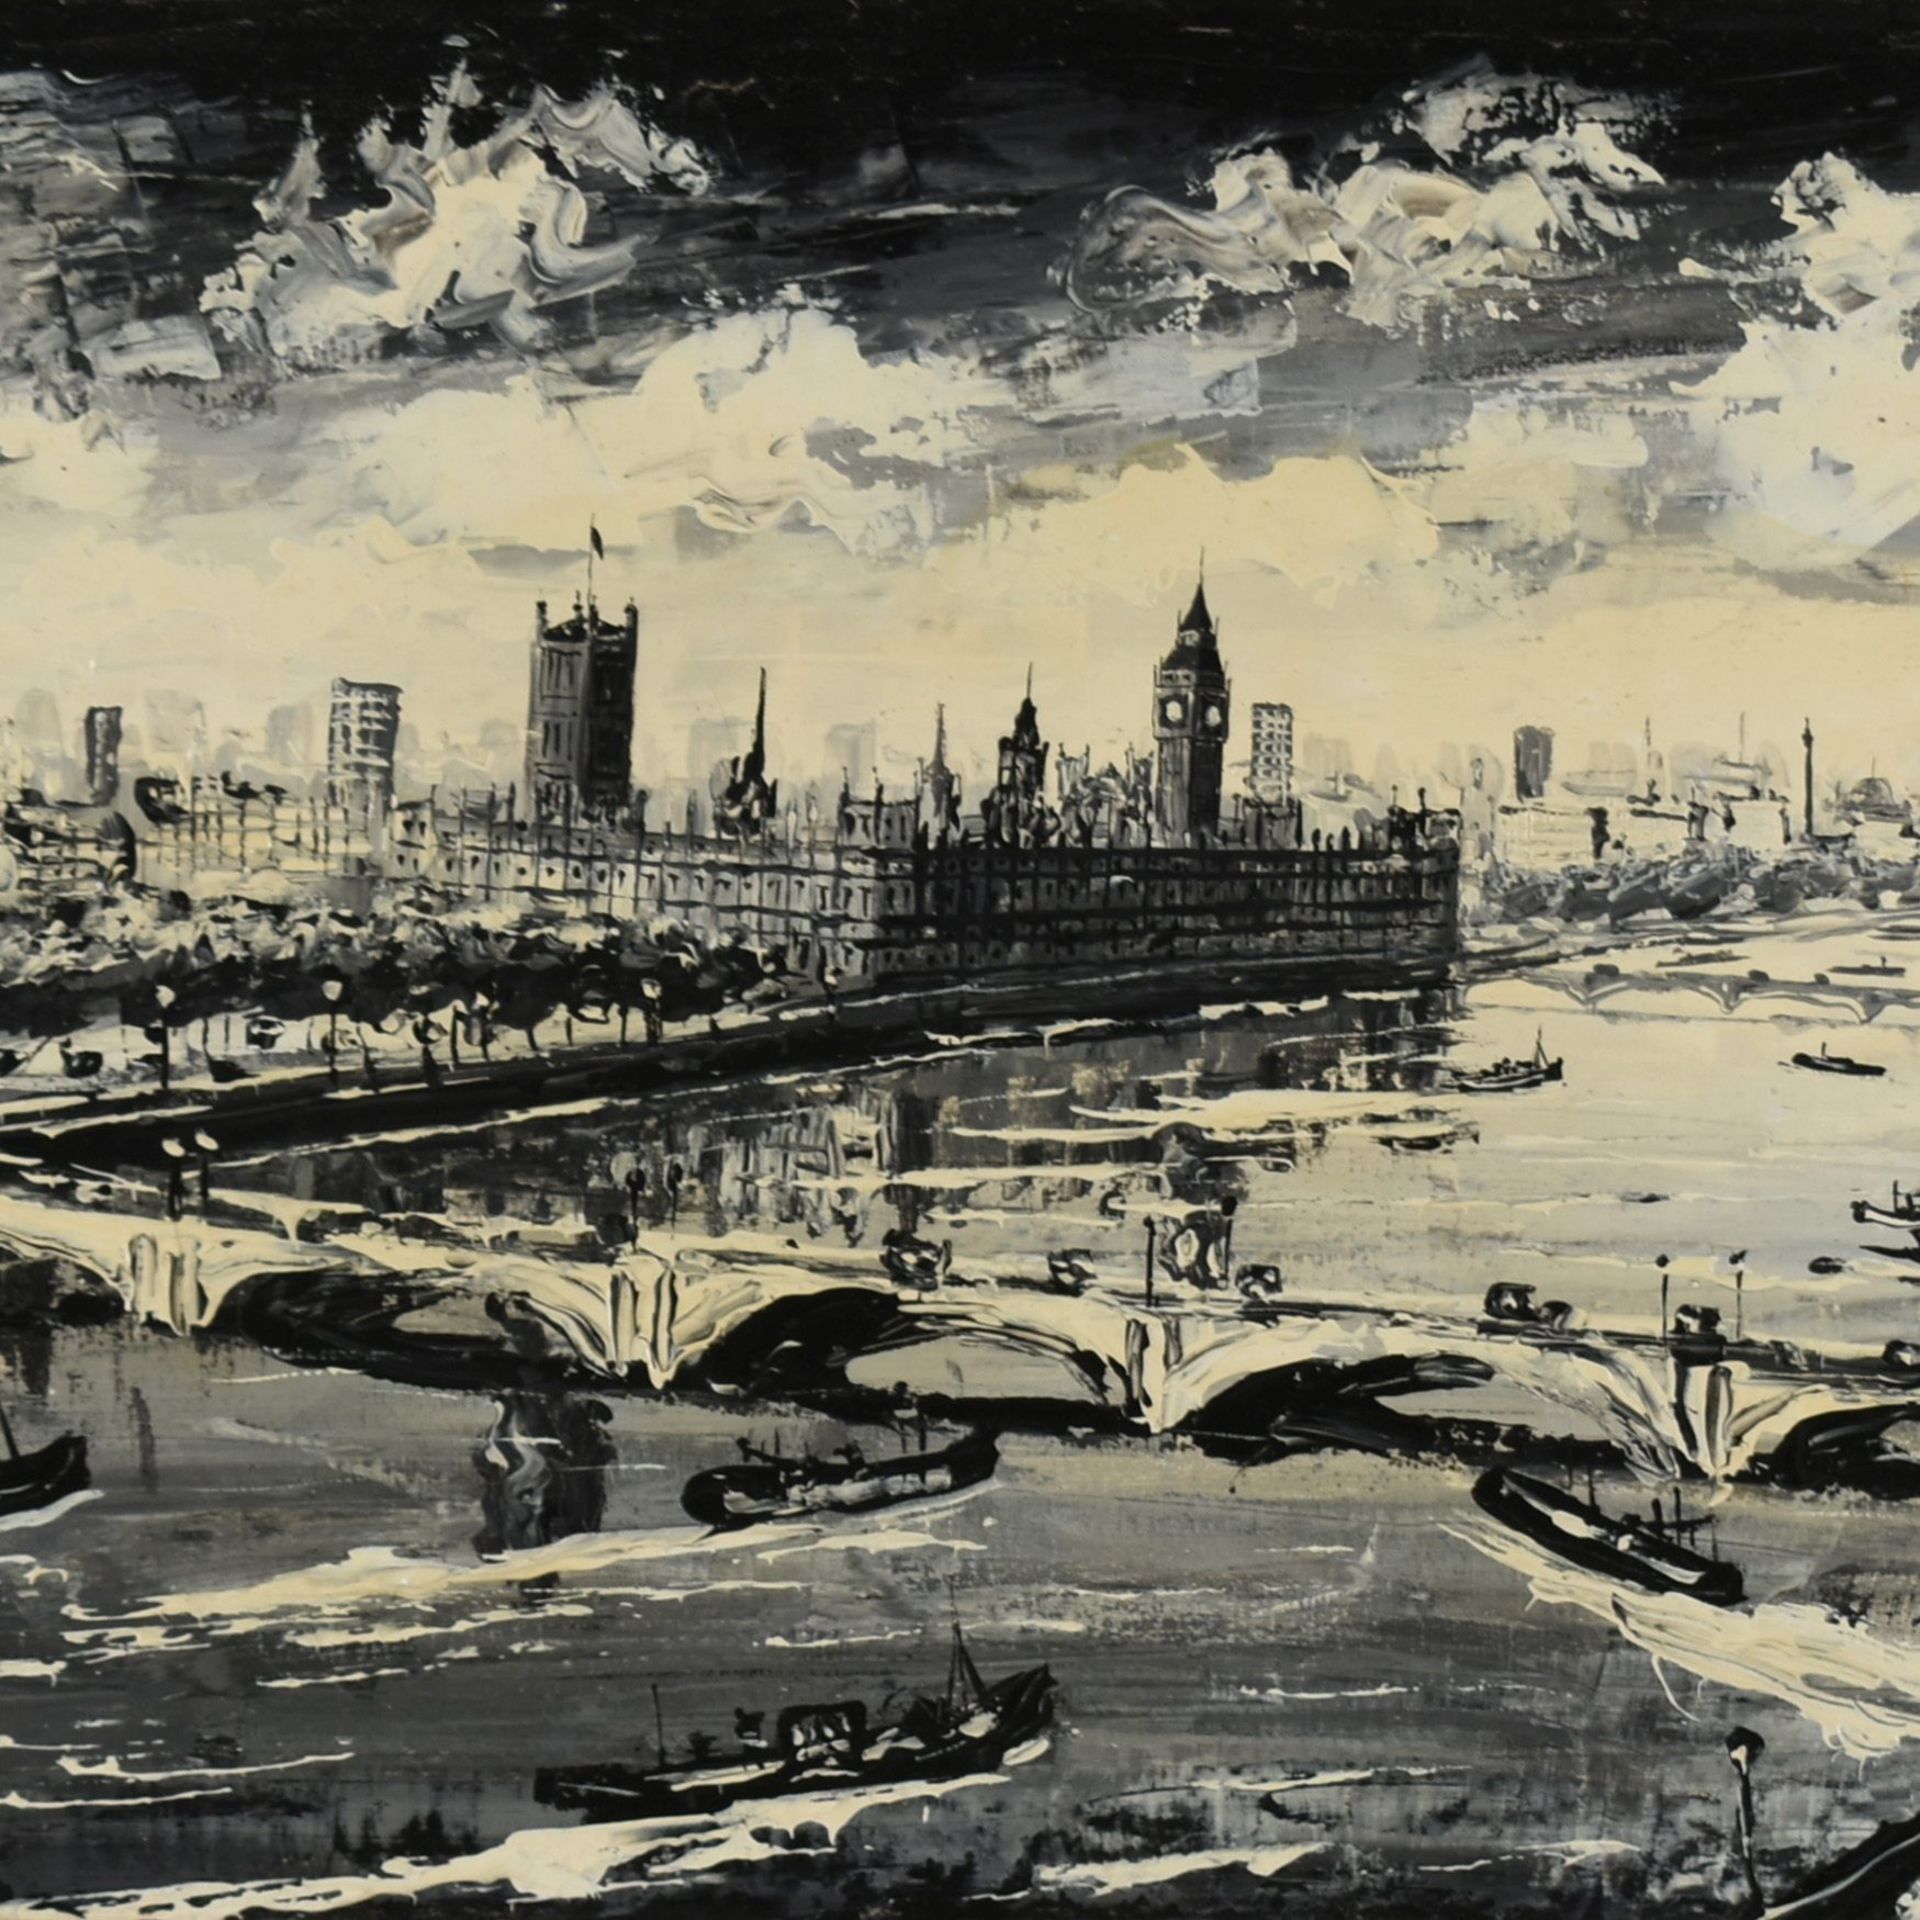 Rodrig Öl/Lwd., London, Blick über die Themse auf Westminster, links unten signiert, ca. 39 x 80 cm,